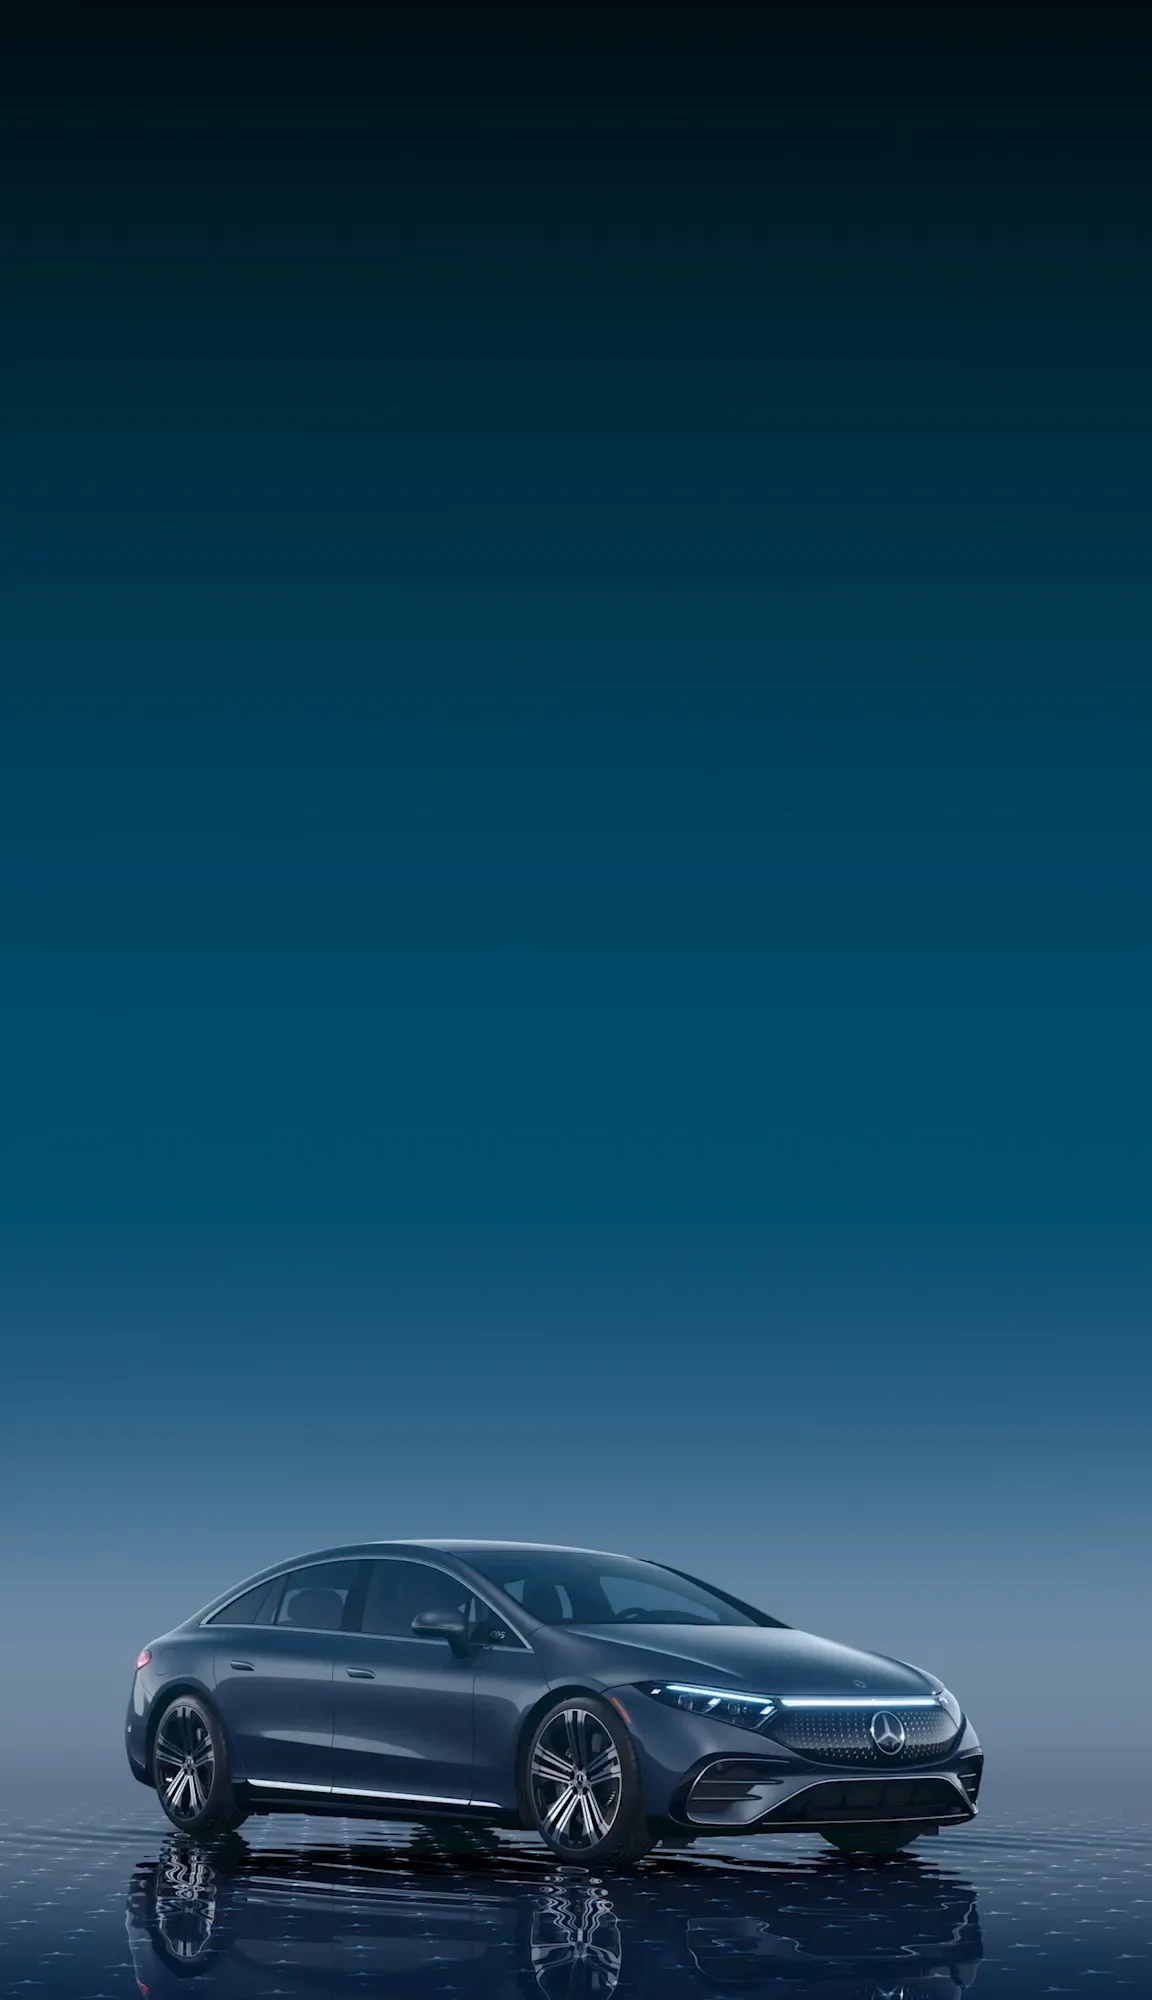 Télécharger la brochure électronique - Mercedes-Benz Canada